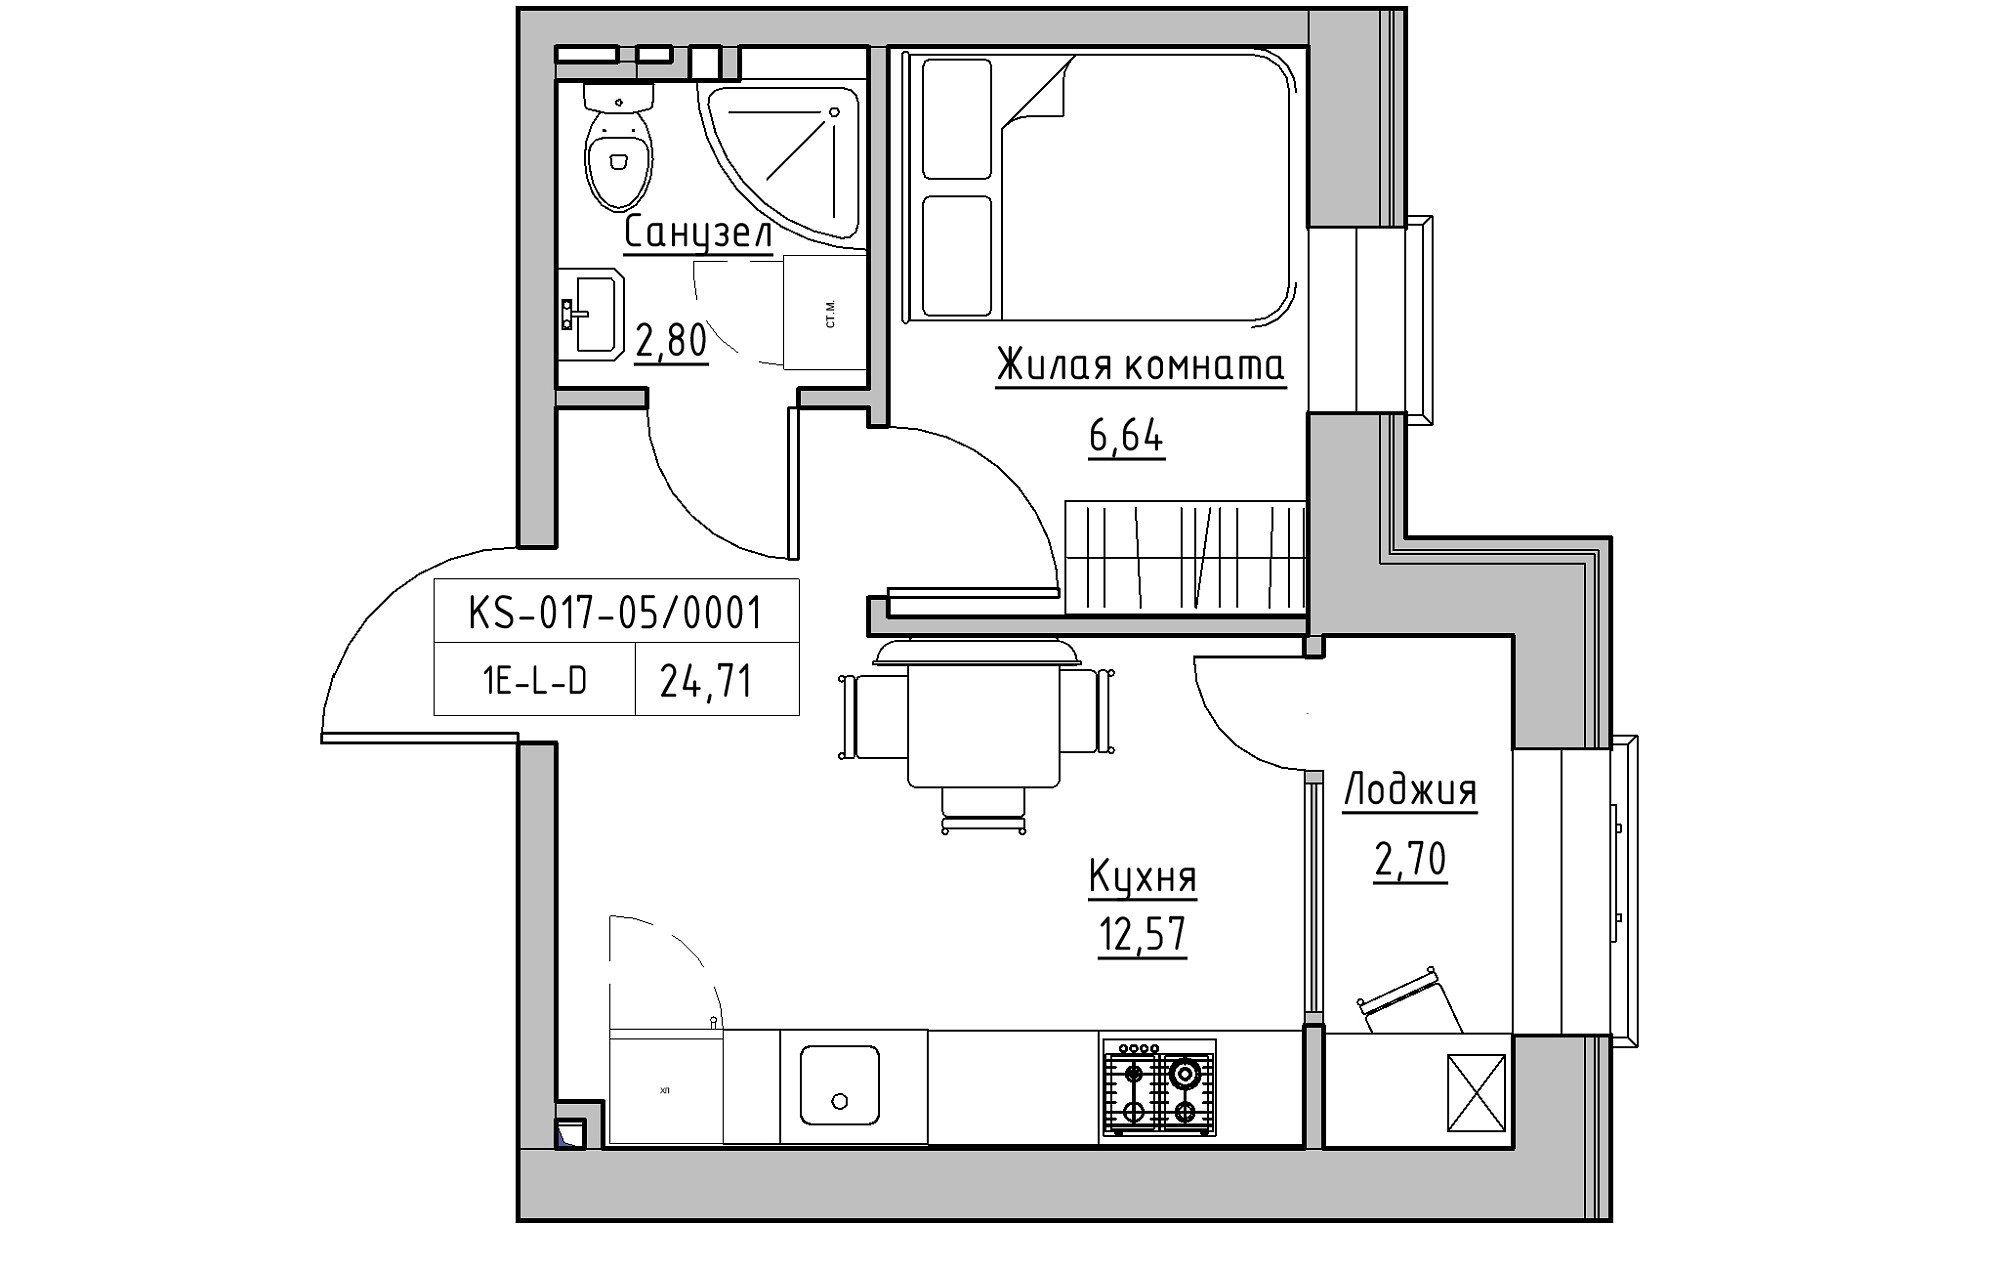 Планировка 1-к квартира площей 24.71м2, KS-017-05/0001.